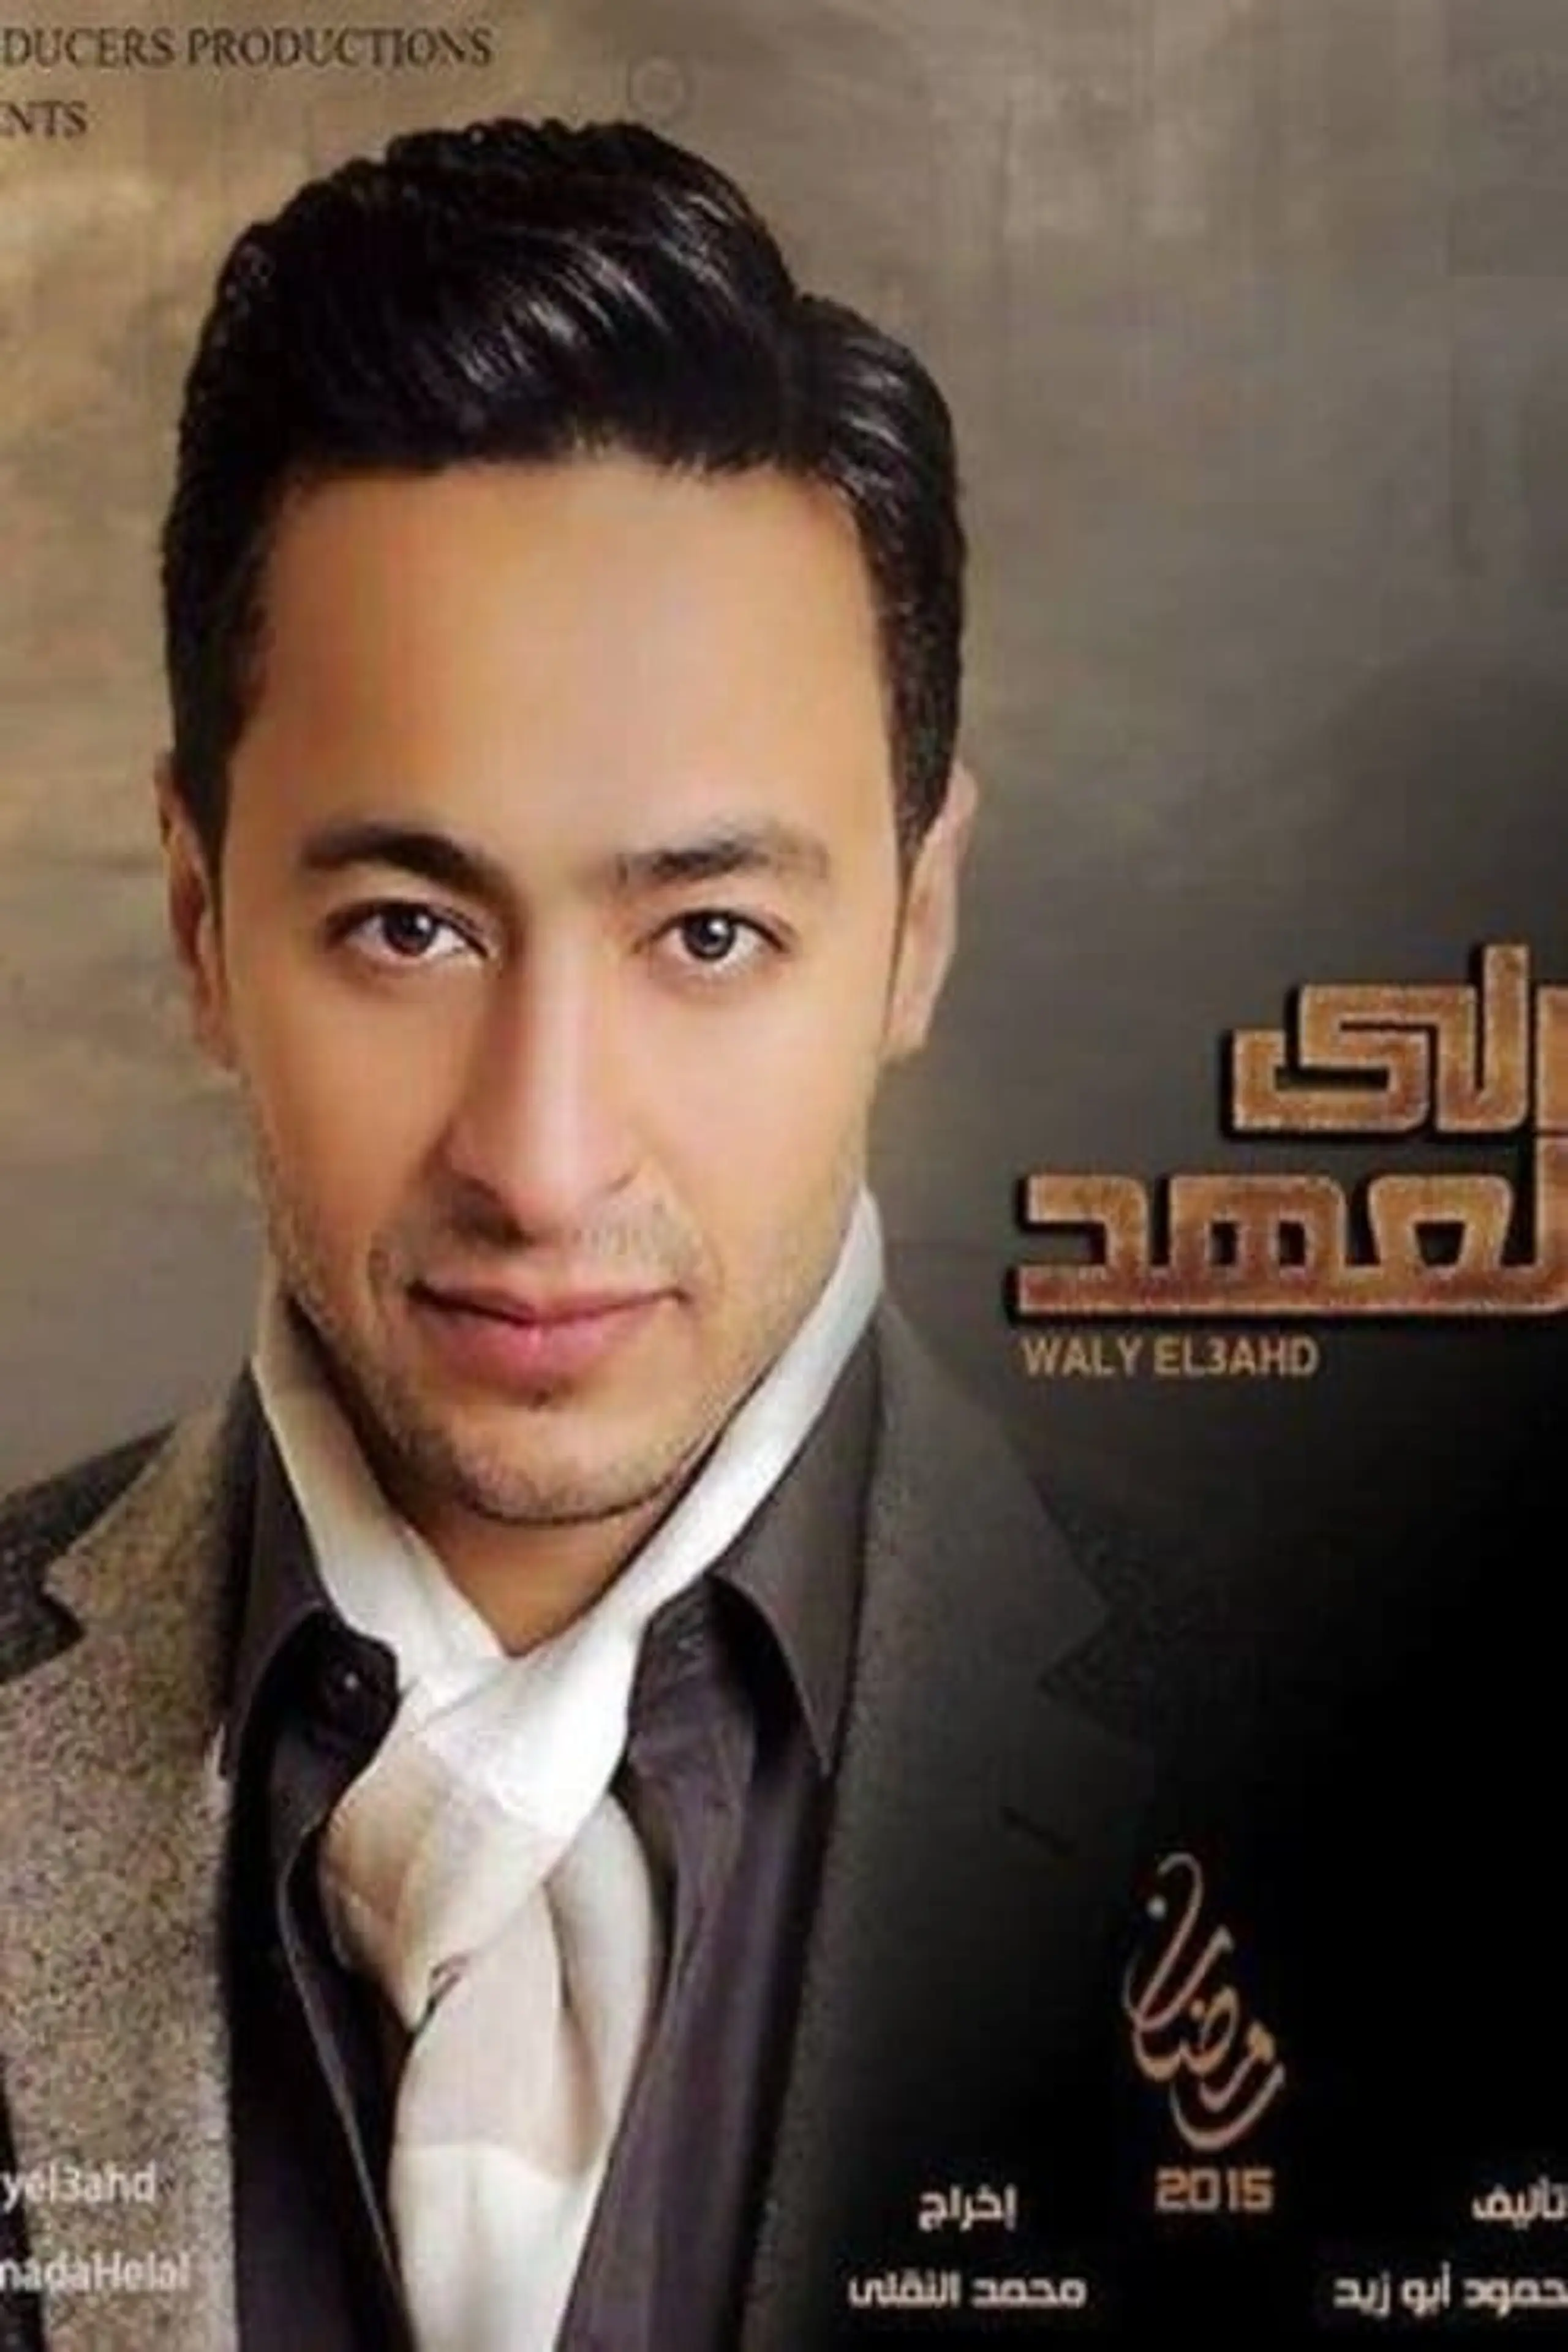 Waly Al-aahd